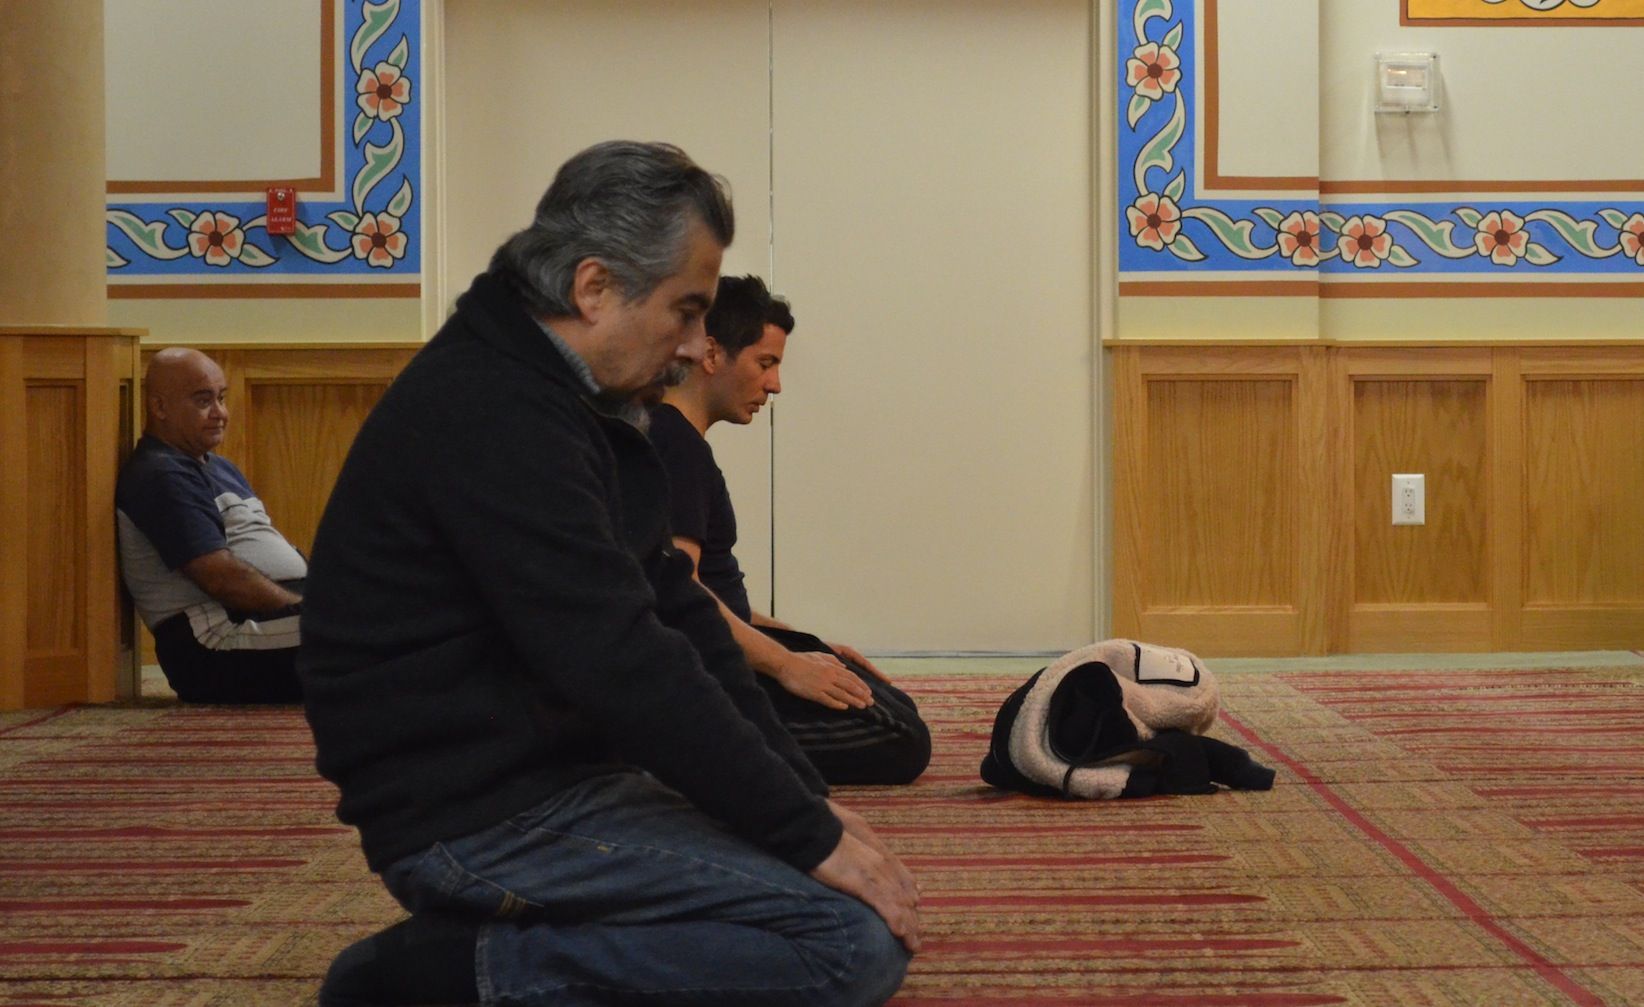 Kenan Taskent praying at the mosque.